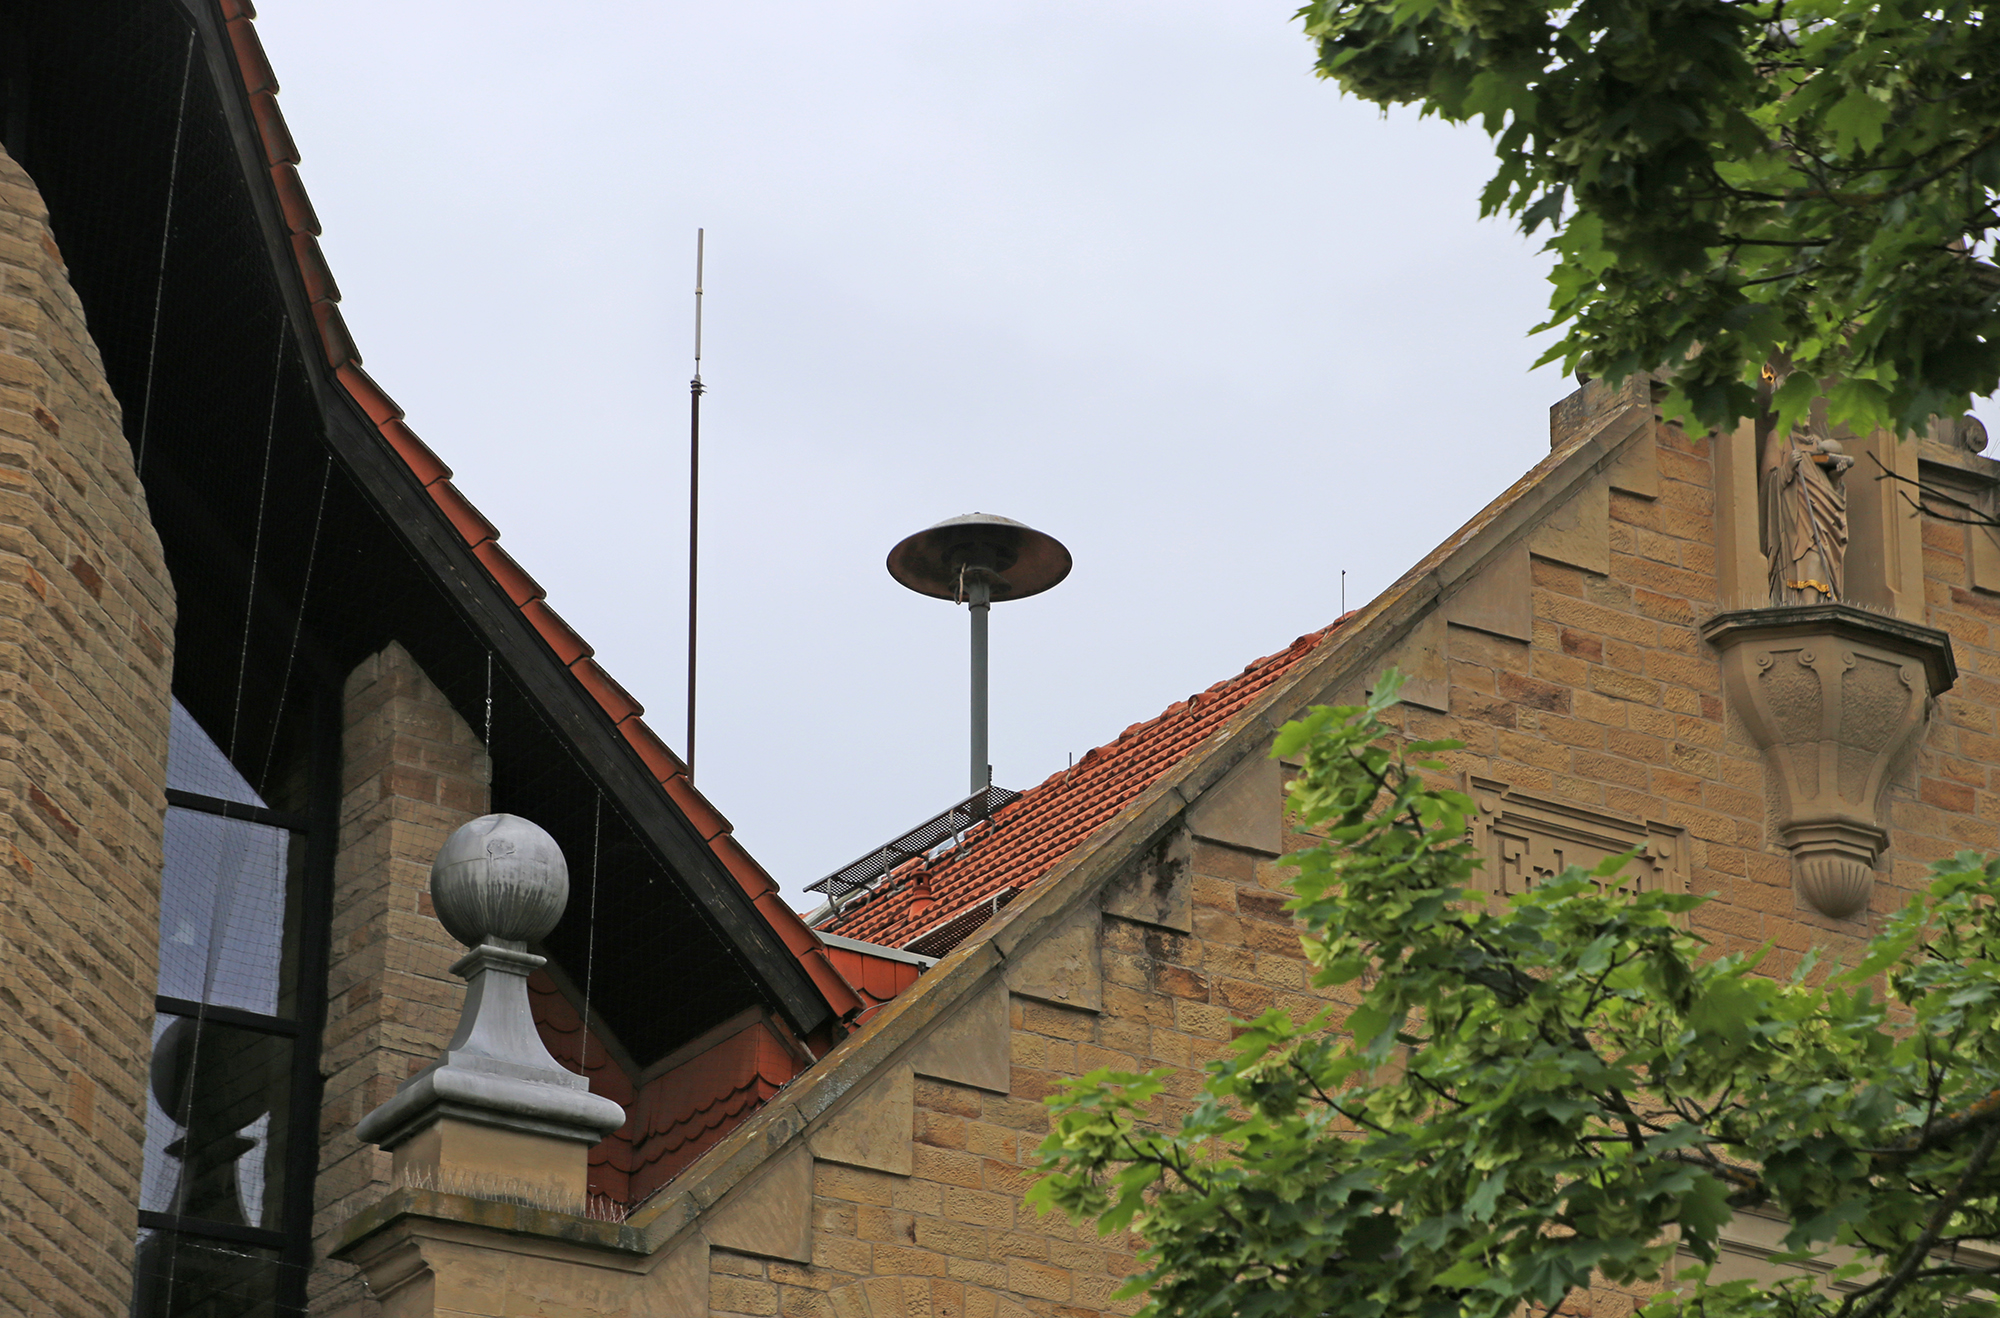  Wie auf dem Dach des Rathauses im Kernort (Foto) gibt es auch in den drei kleineren Stadtteilen Sirenenanlagen für die Warnung der Bevölkerung im Krisen- oder Katastrophenfall 